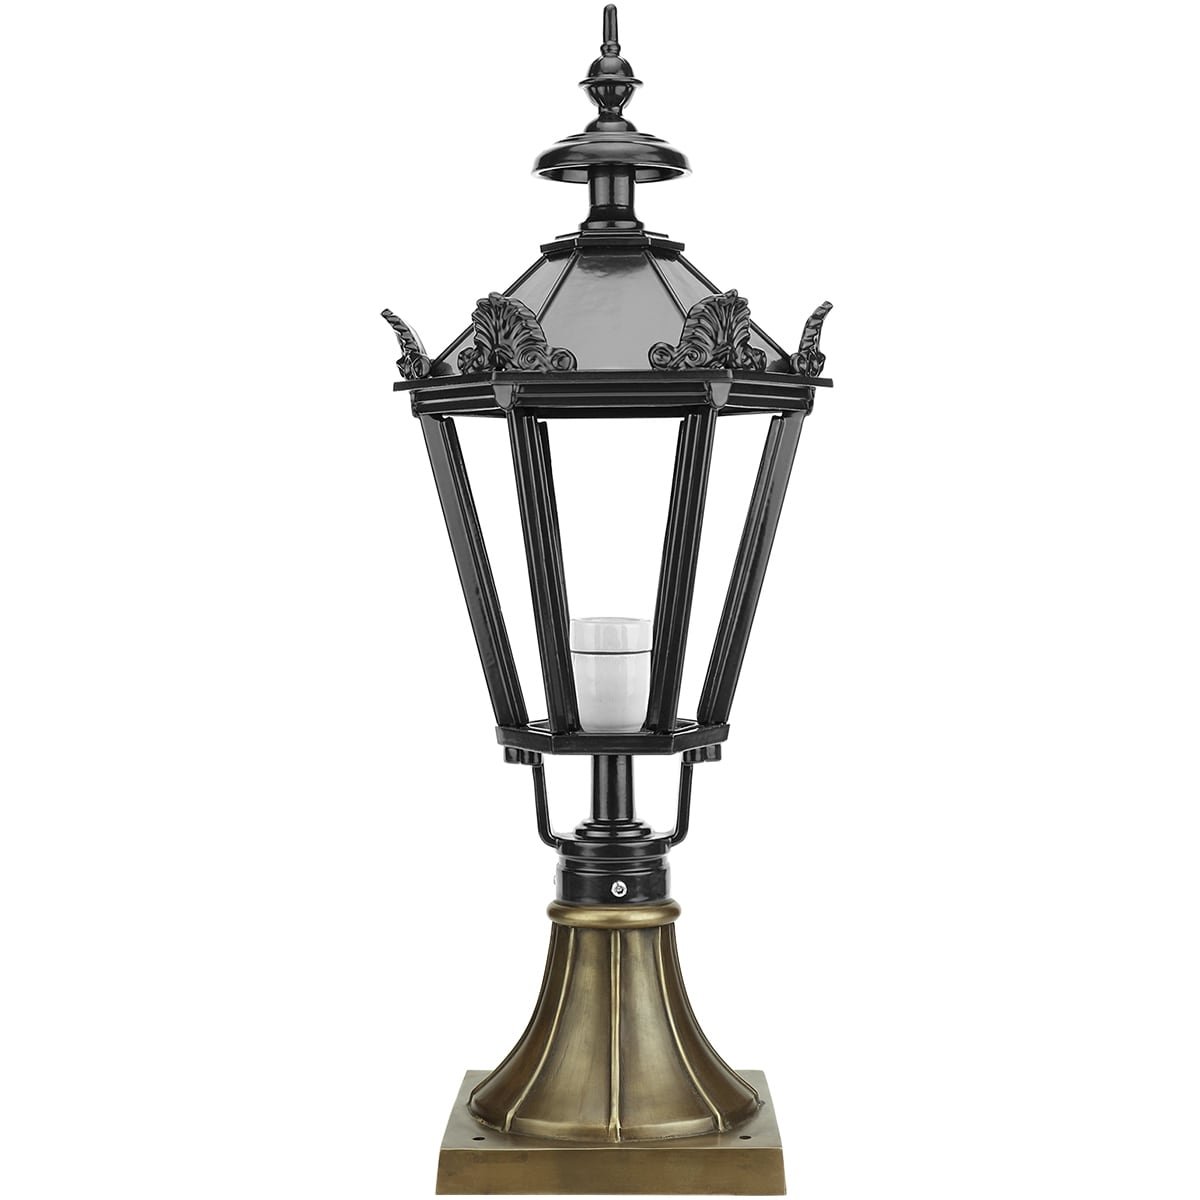 Lantaarn lamp Beuningen brons - 79 cm